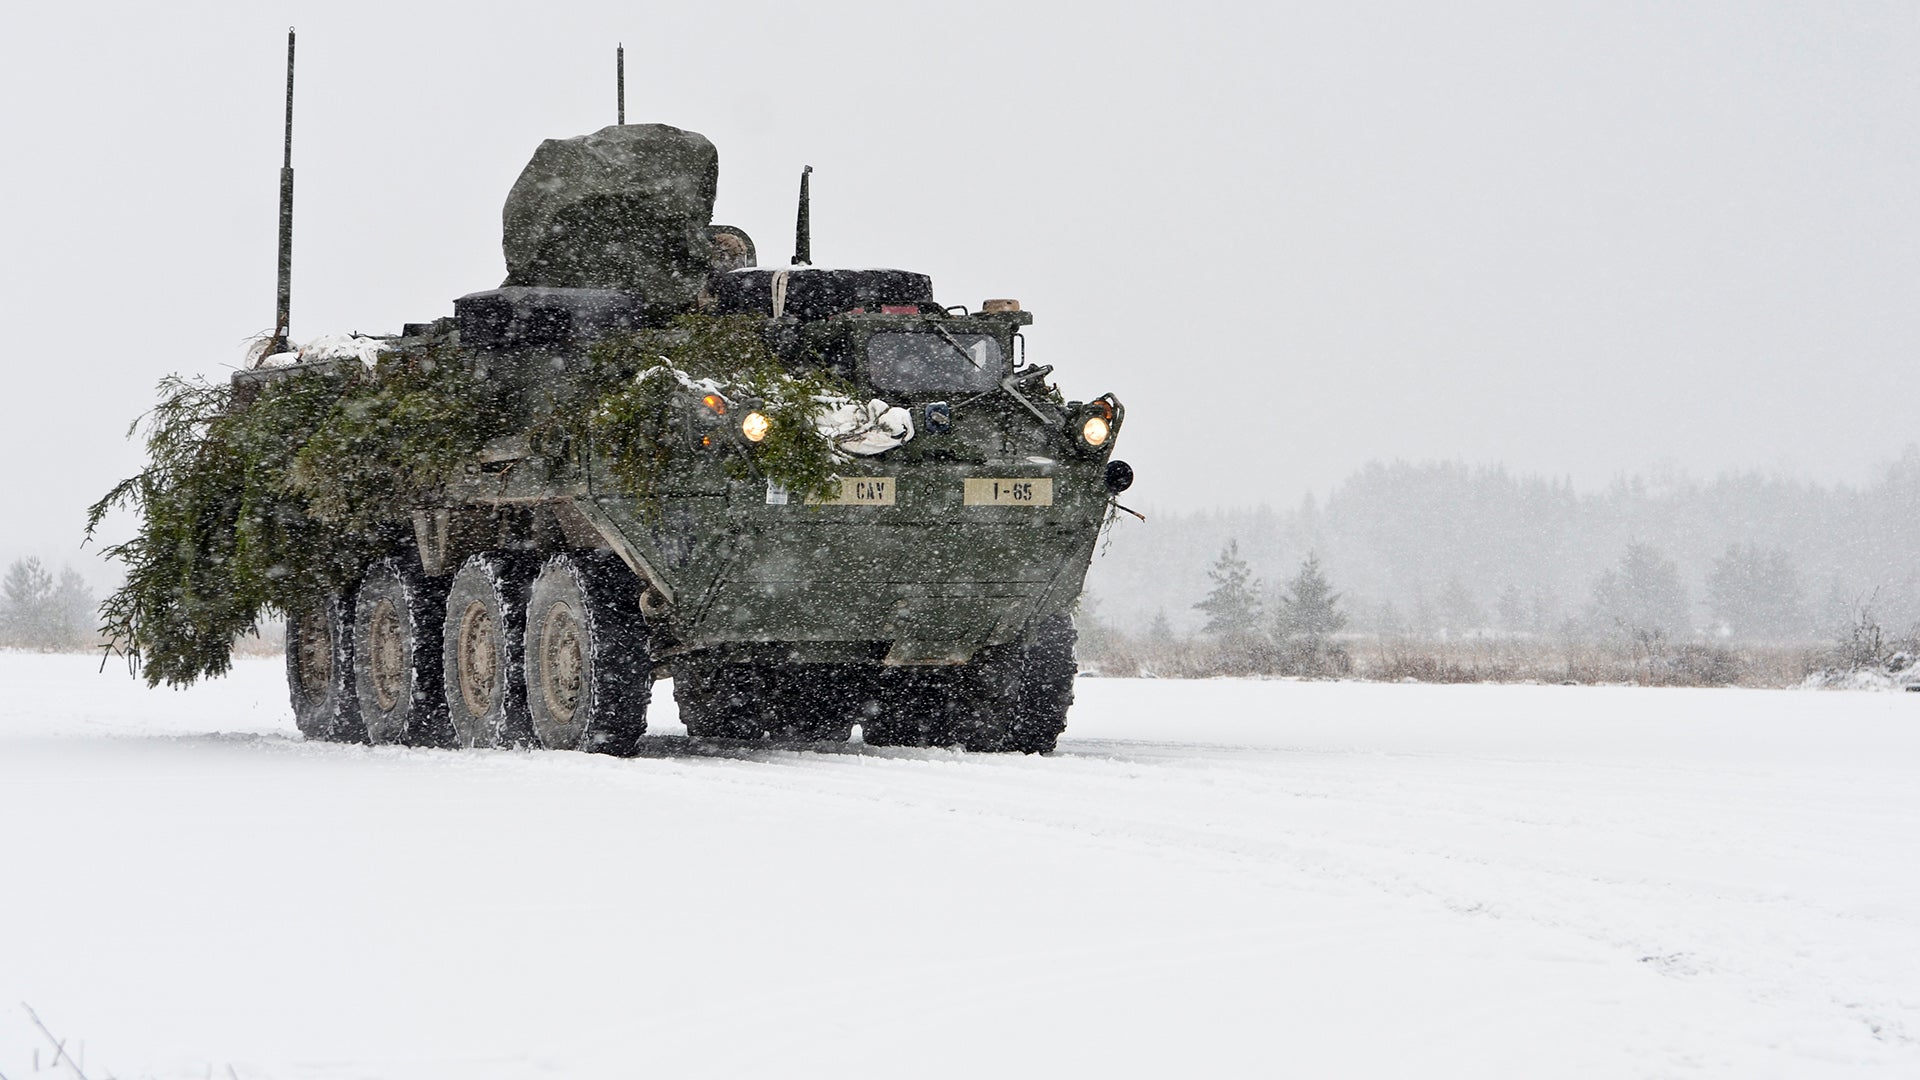 Casi todos los vehículos de combate prometidos están en Ucrania: jefe de la OTAN